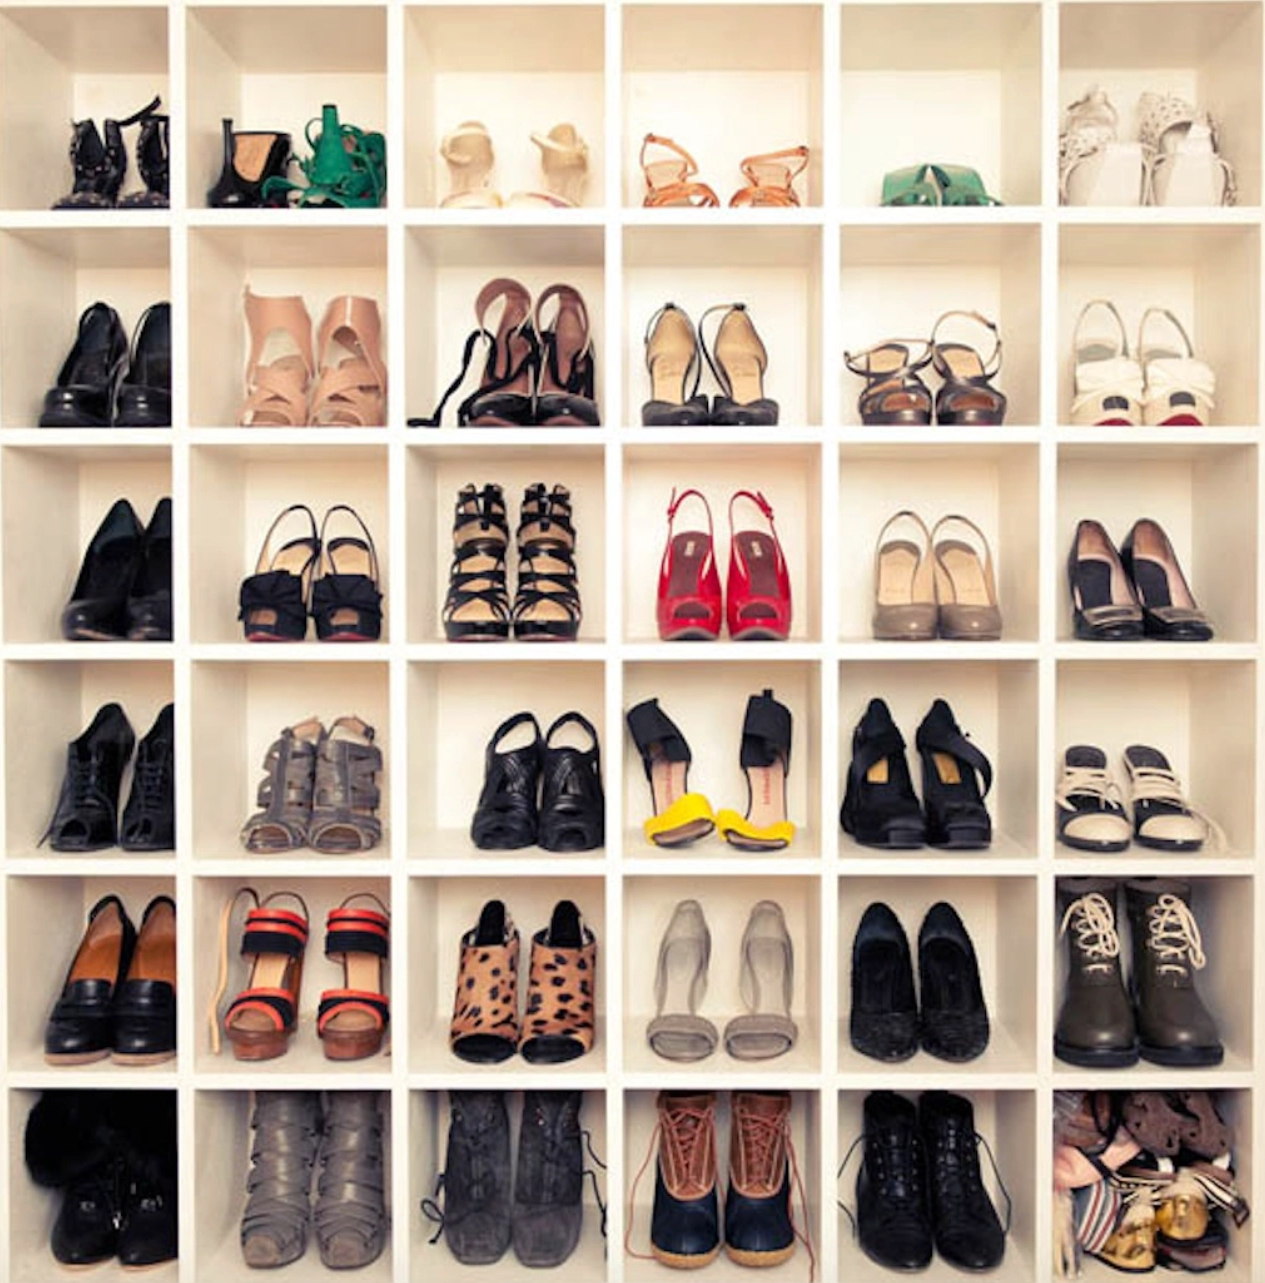 6 cách lưu trữ giày dép cực hay giúp nhà luôn gọn gàng - Ảnh 7.